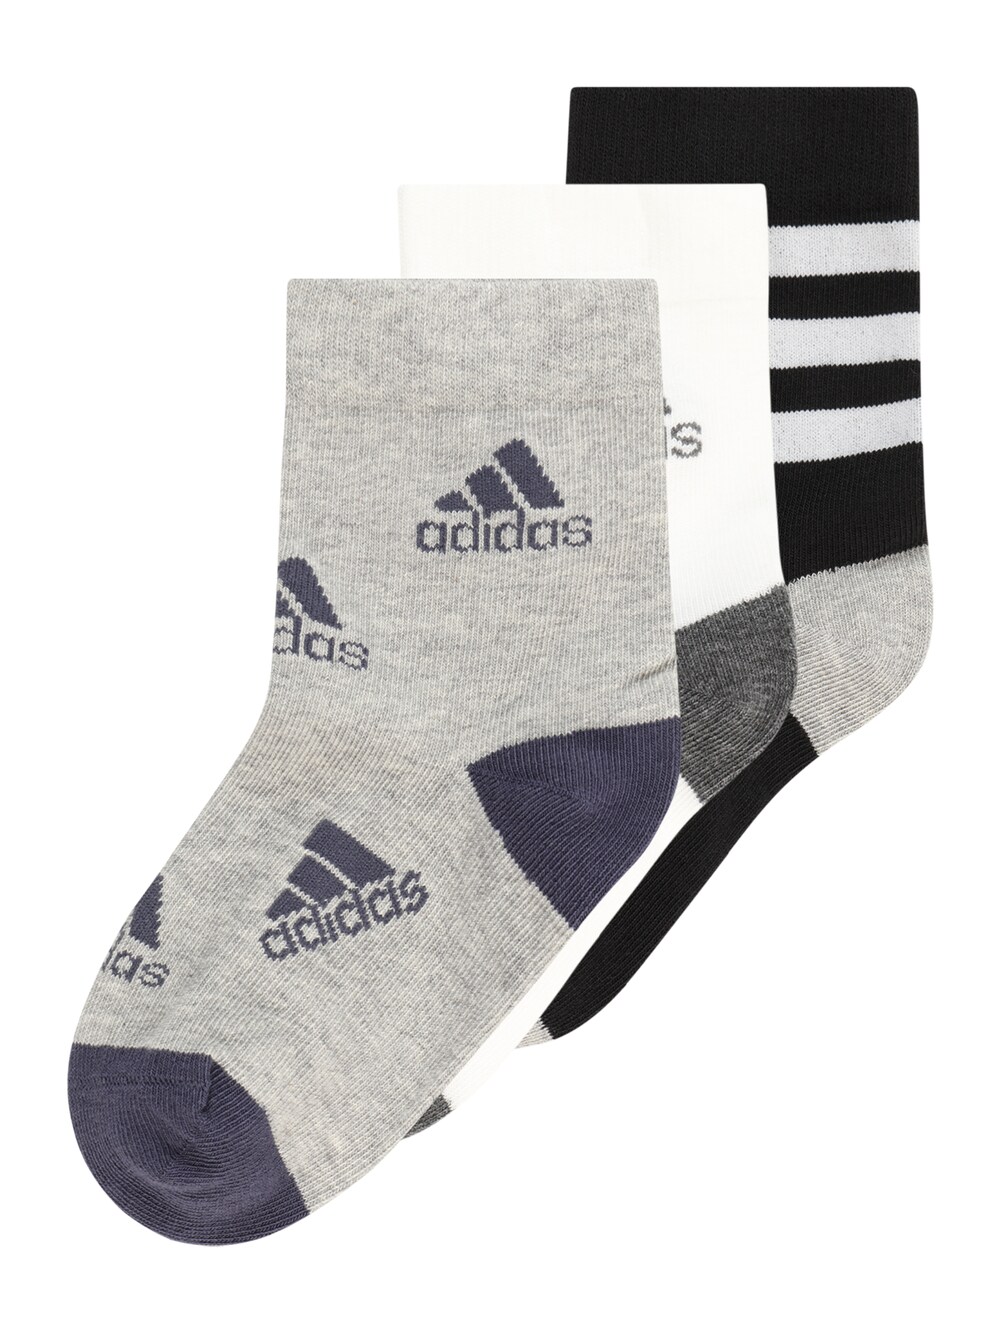 футболка adidas размер m черный белый Спортивные носки ADIDAS PERFORMANCE Graphic, серый/черный/белый